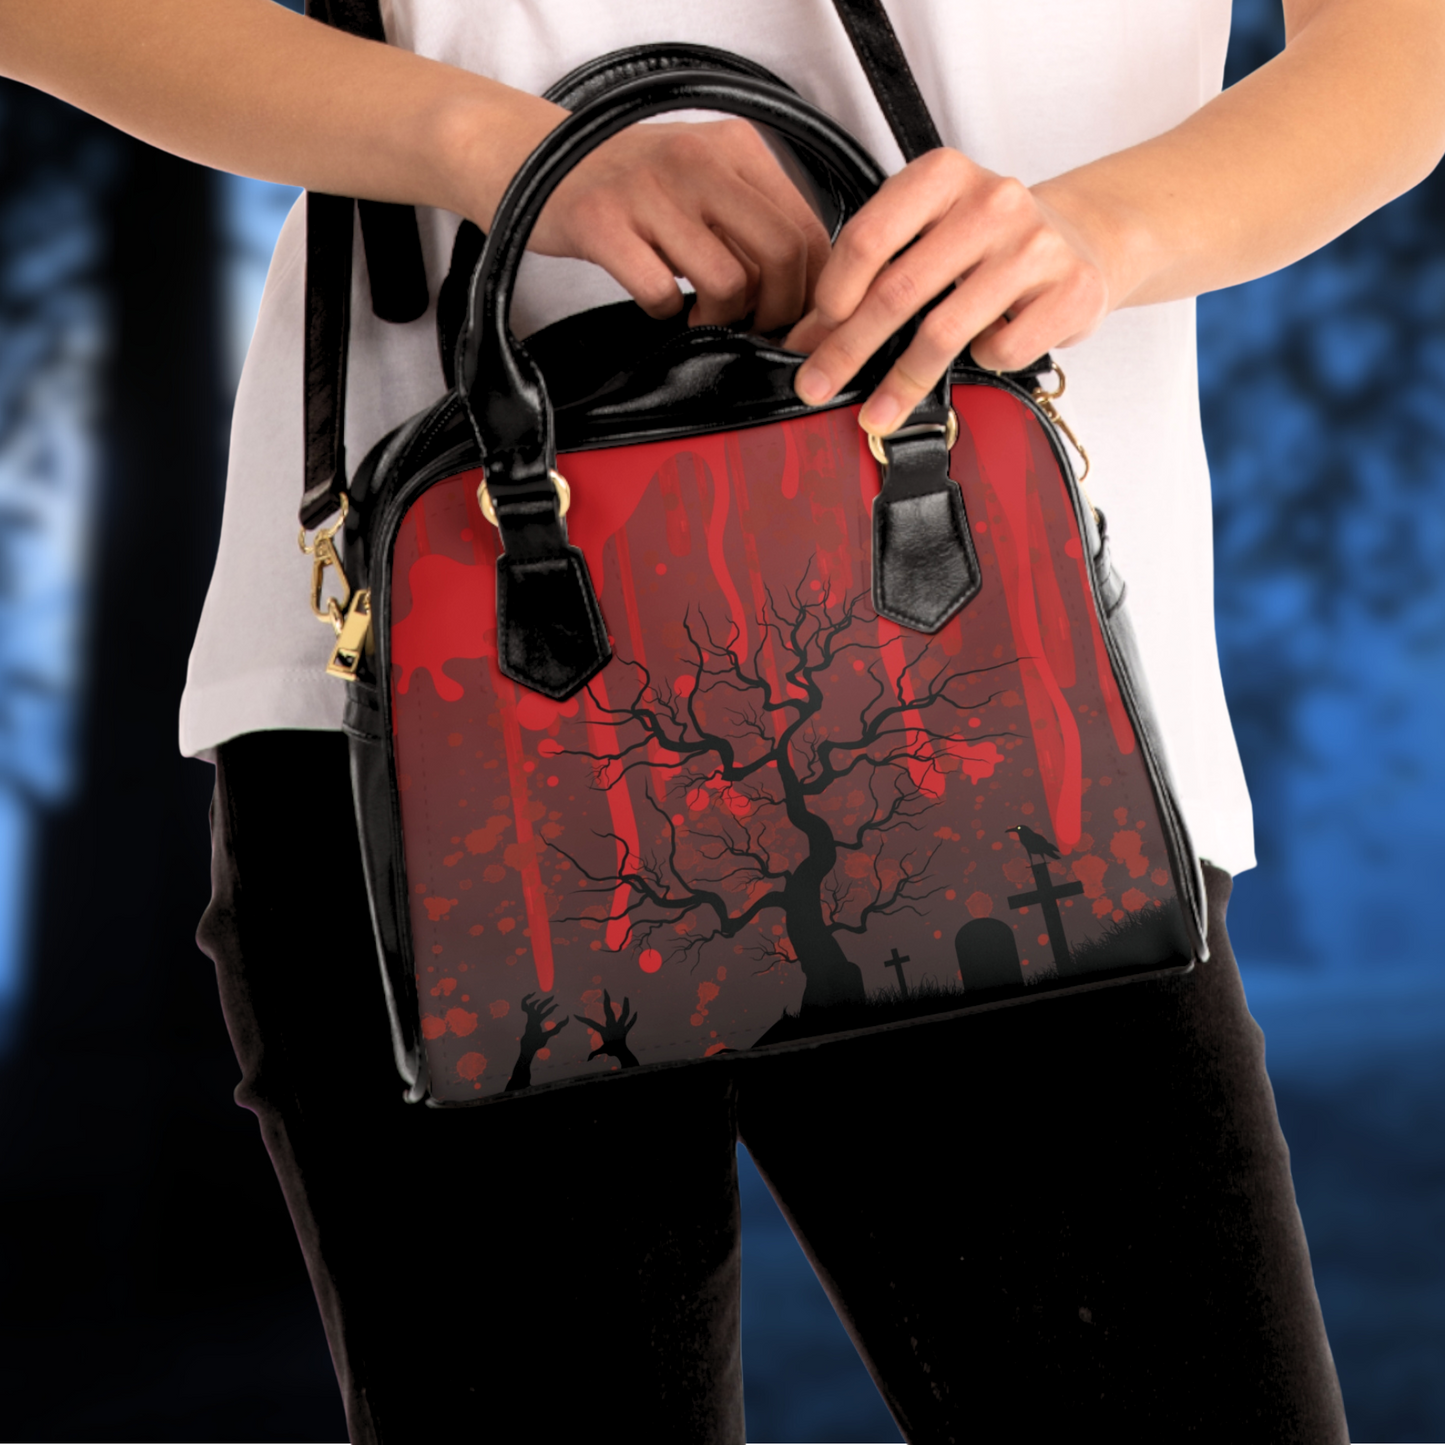 Undead handbag women's horror crossbody bag zombie horror crossbody purse horror graveyard zombie purse horror gift for her blood red bag